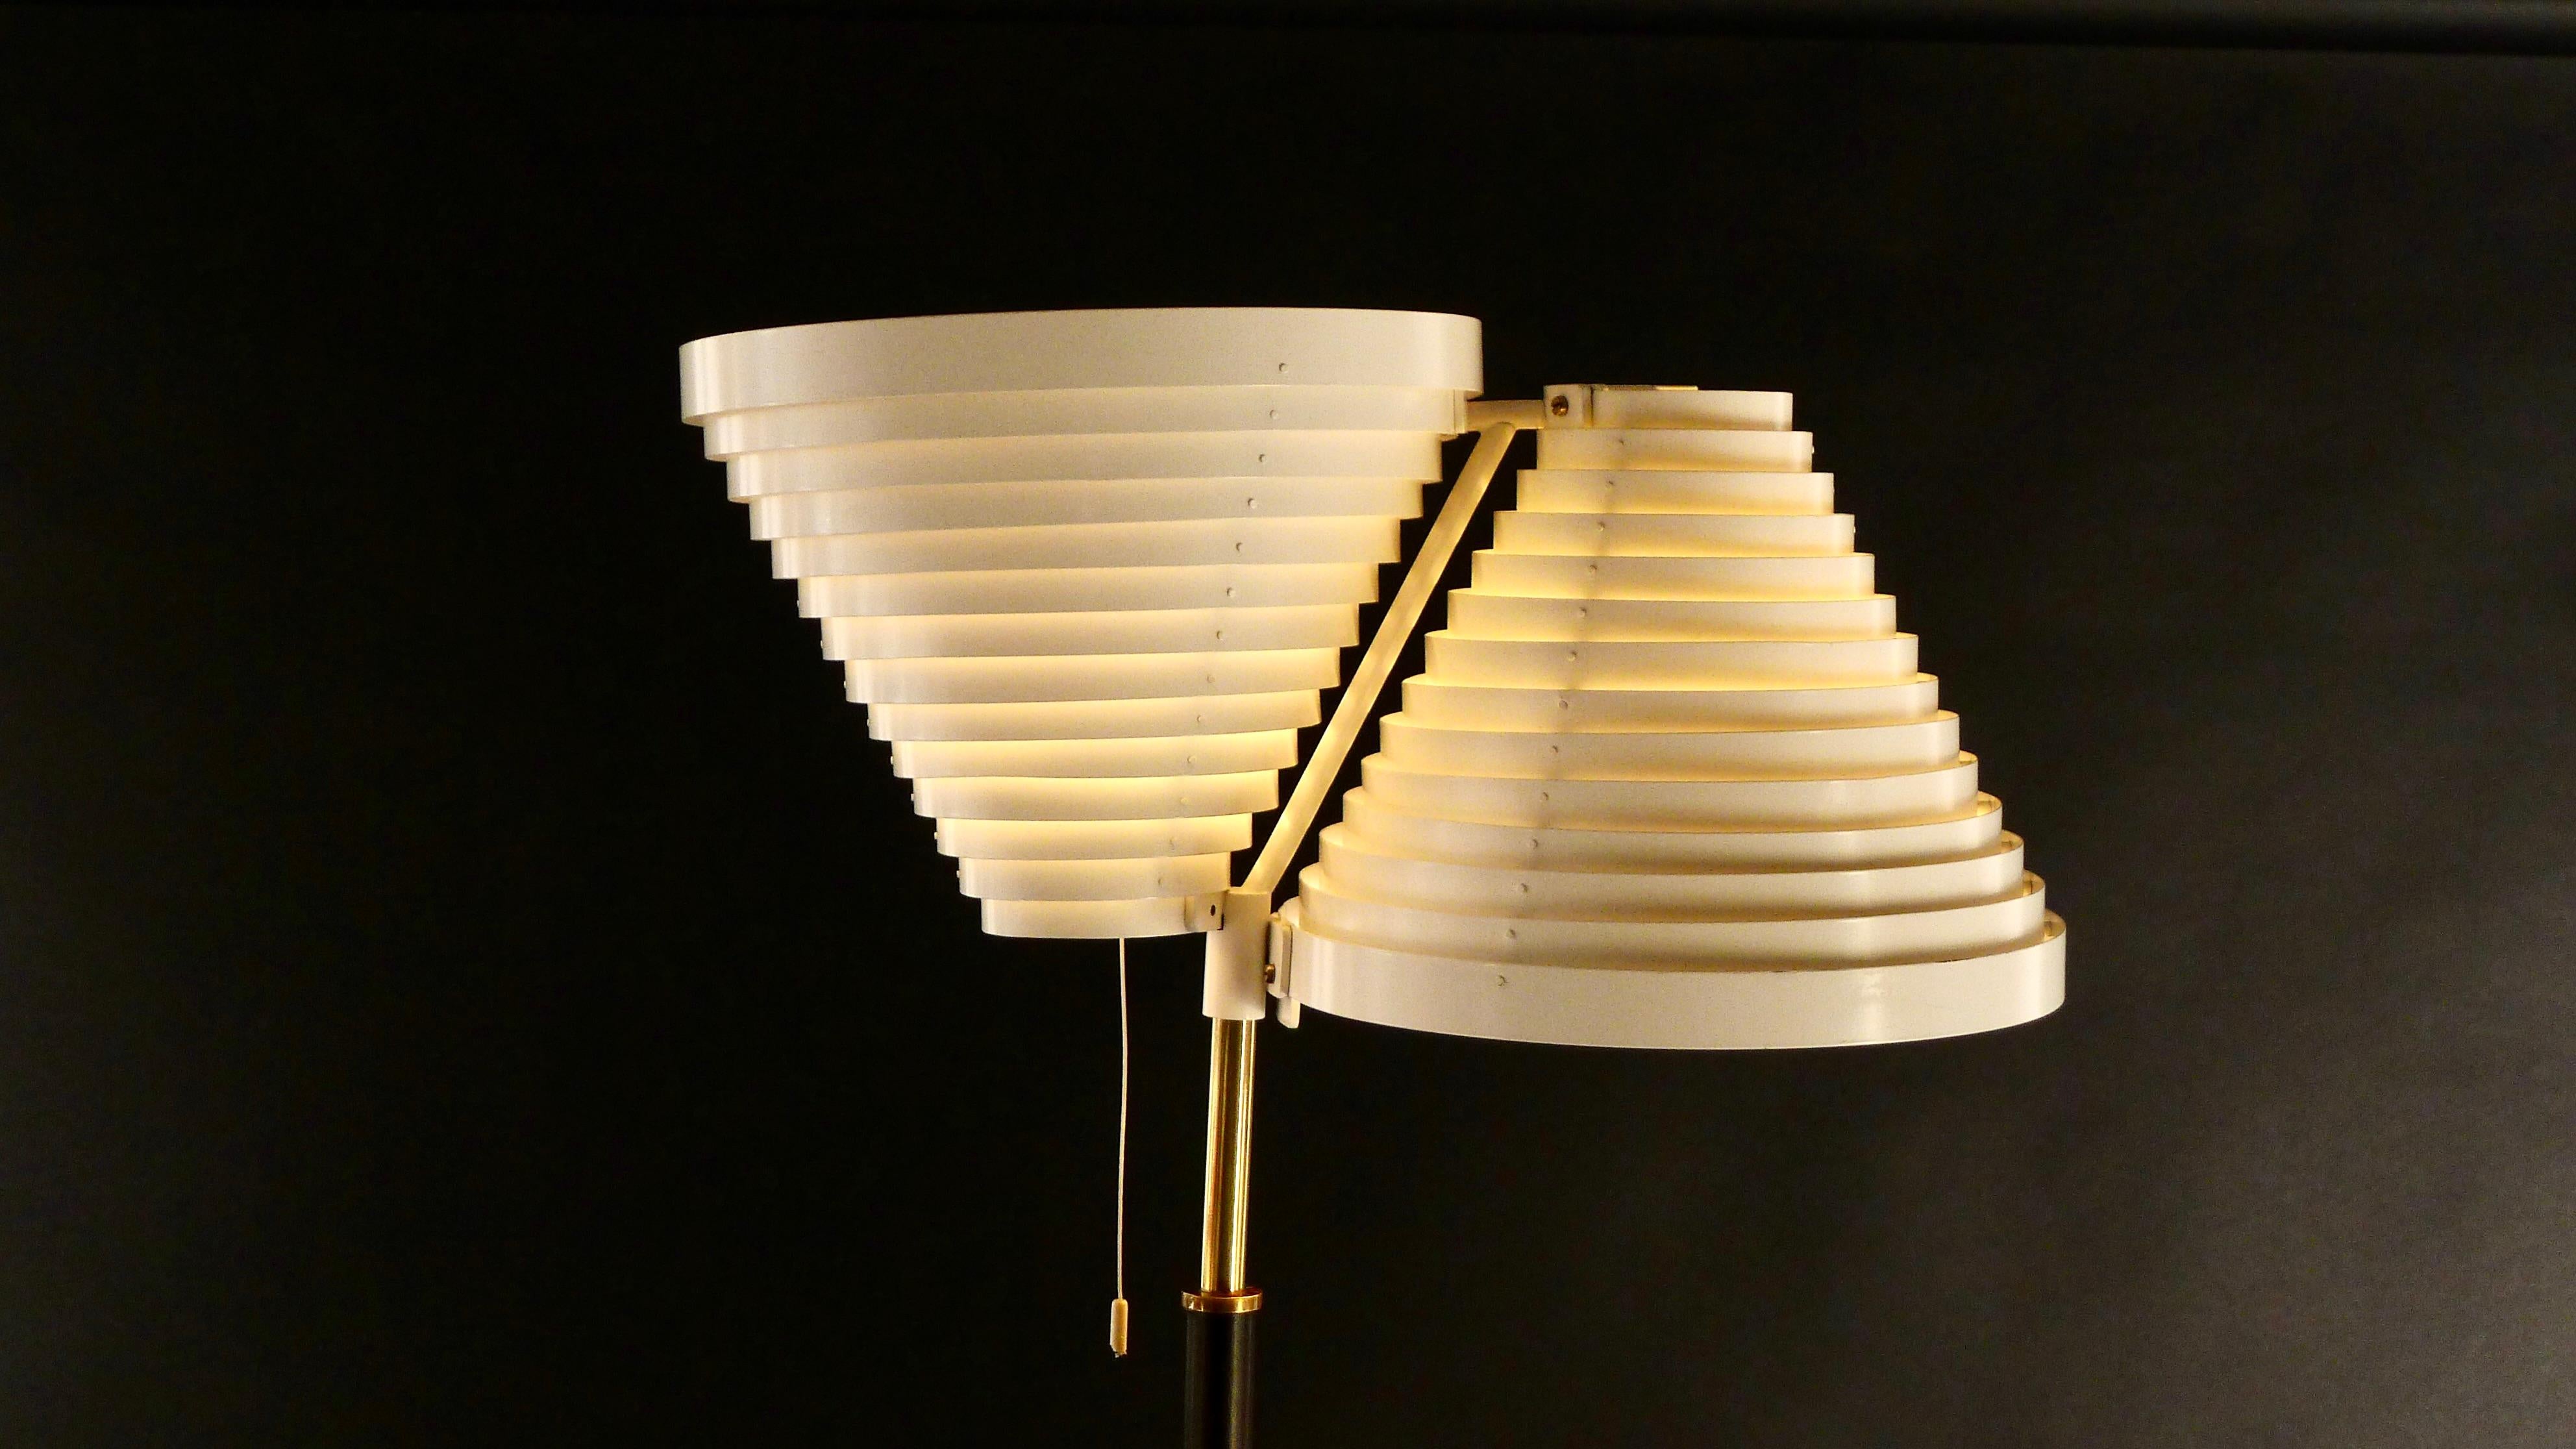 Ce rare lampadaire à double aile d'ange a été conçu par Alvar Aalto en 1959 et produit par Valaistystyo Ky, Helsinki, qui a été le premier fabricant de cette lampe.

Les emblématiques abat-jour à lamelles en métal laqué blanc s'élèvent sur une